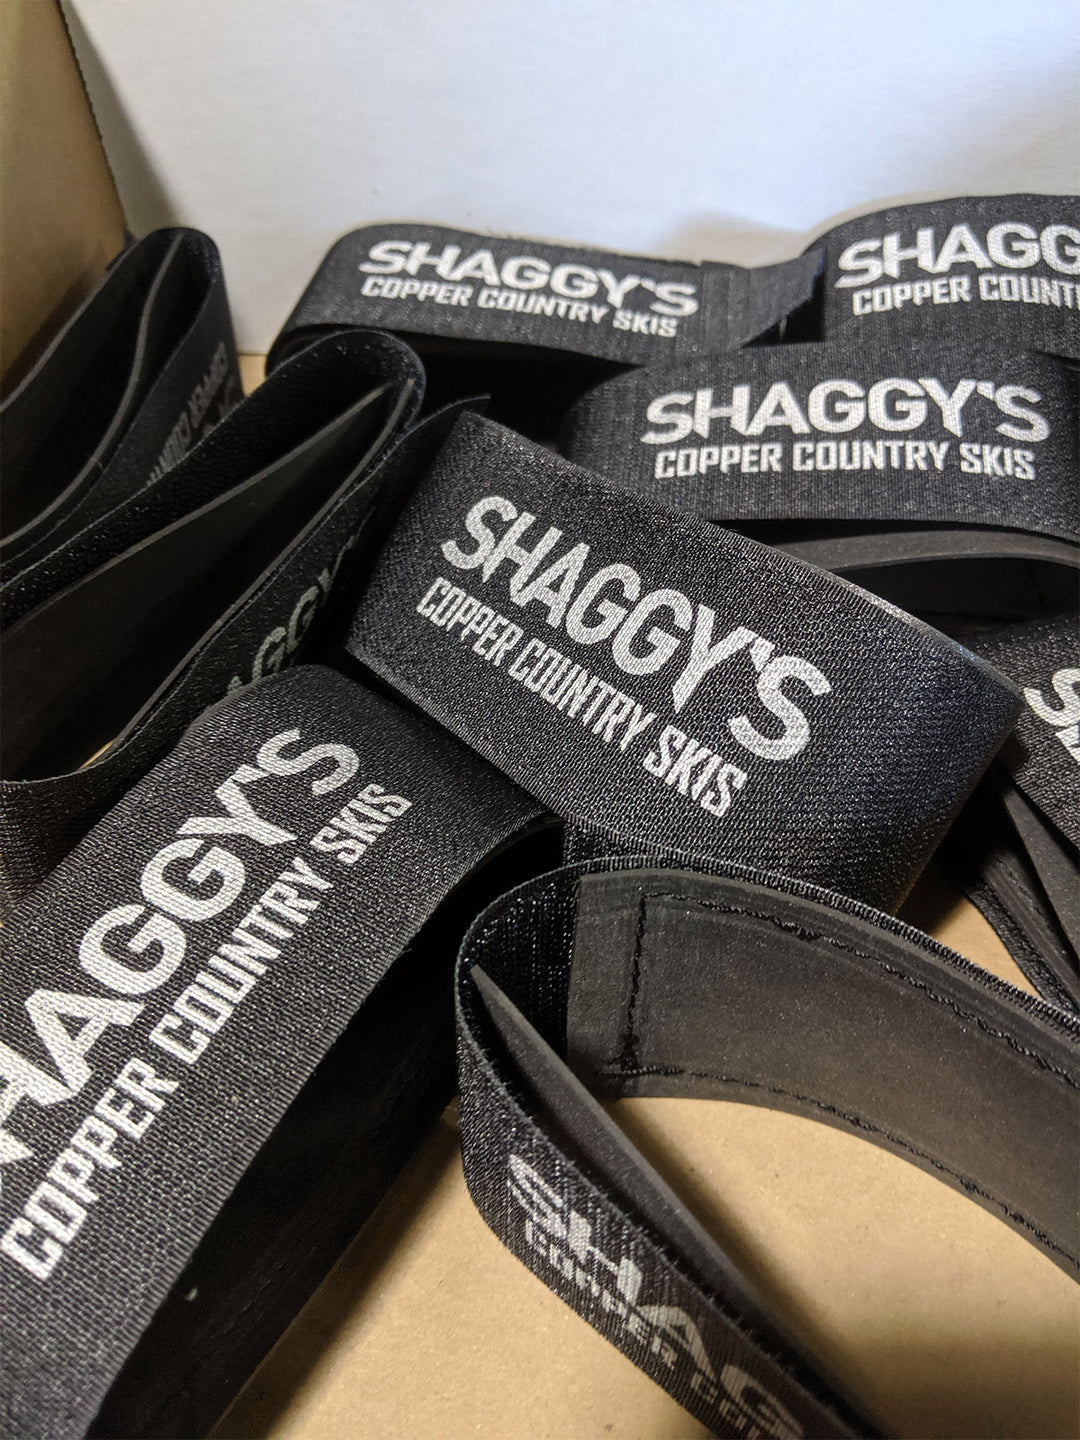 Shaggy's Ski Straps